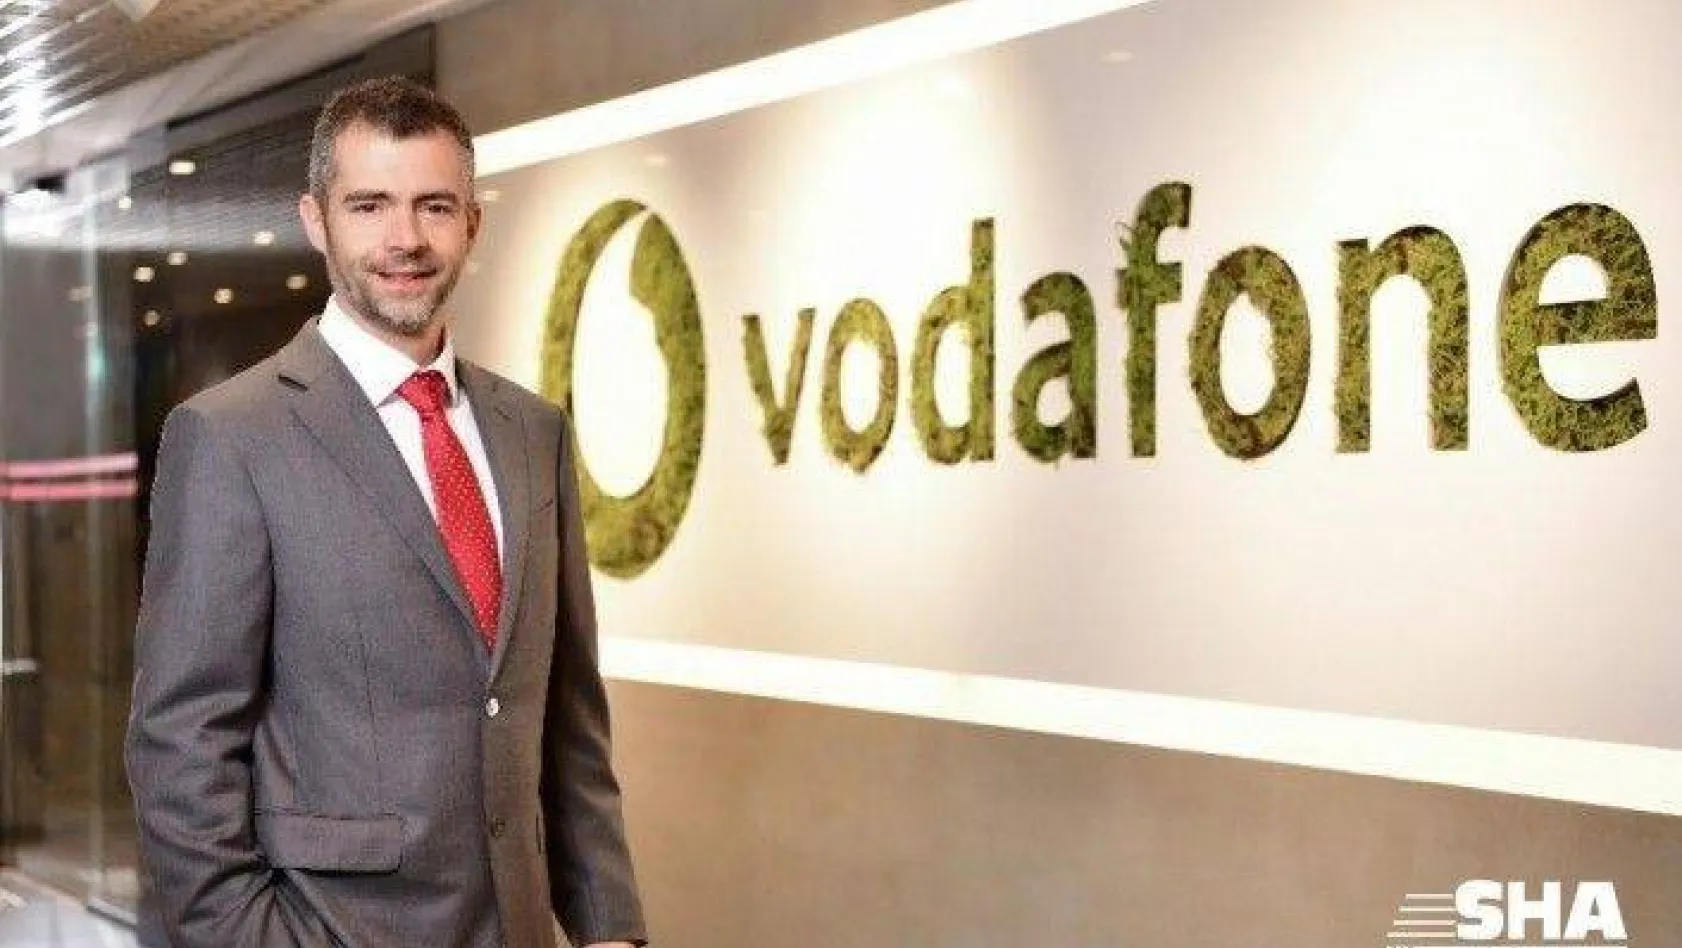 Vodafone Türkiye'den şebekesinde segment yönlendirme teknolojisi